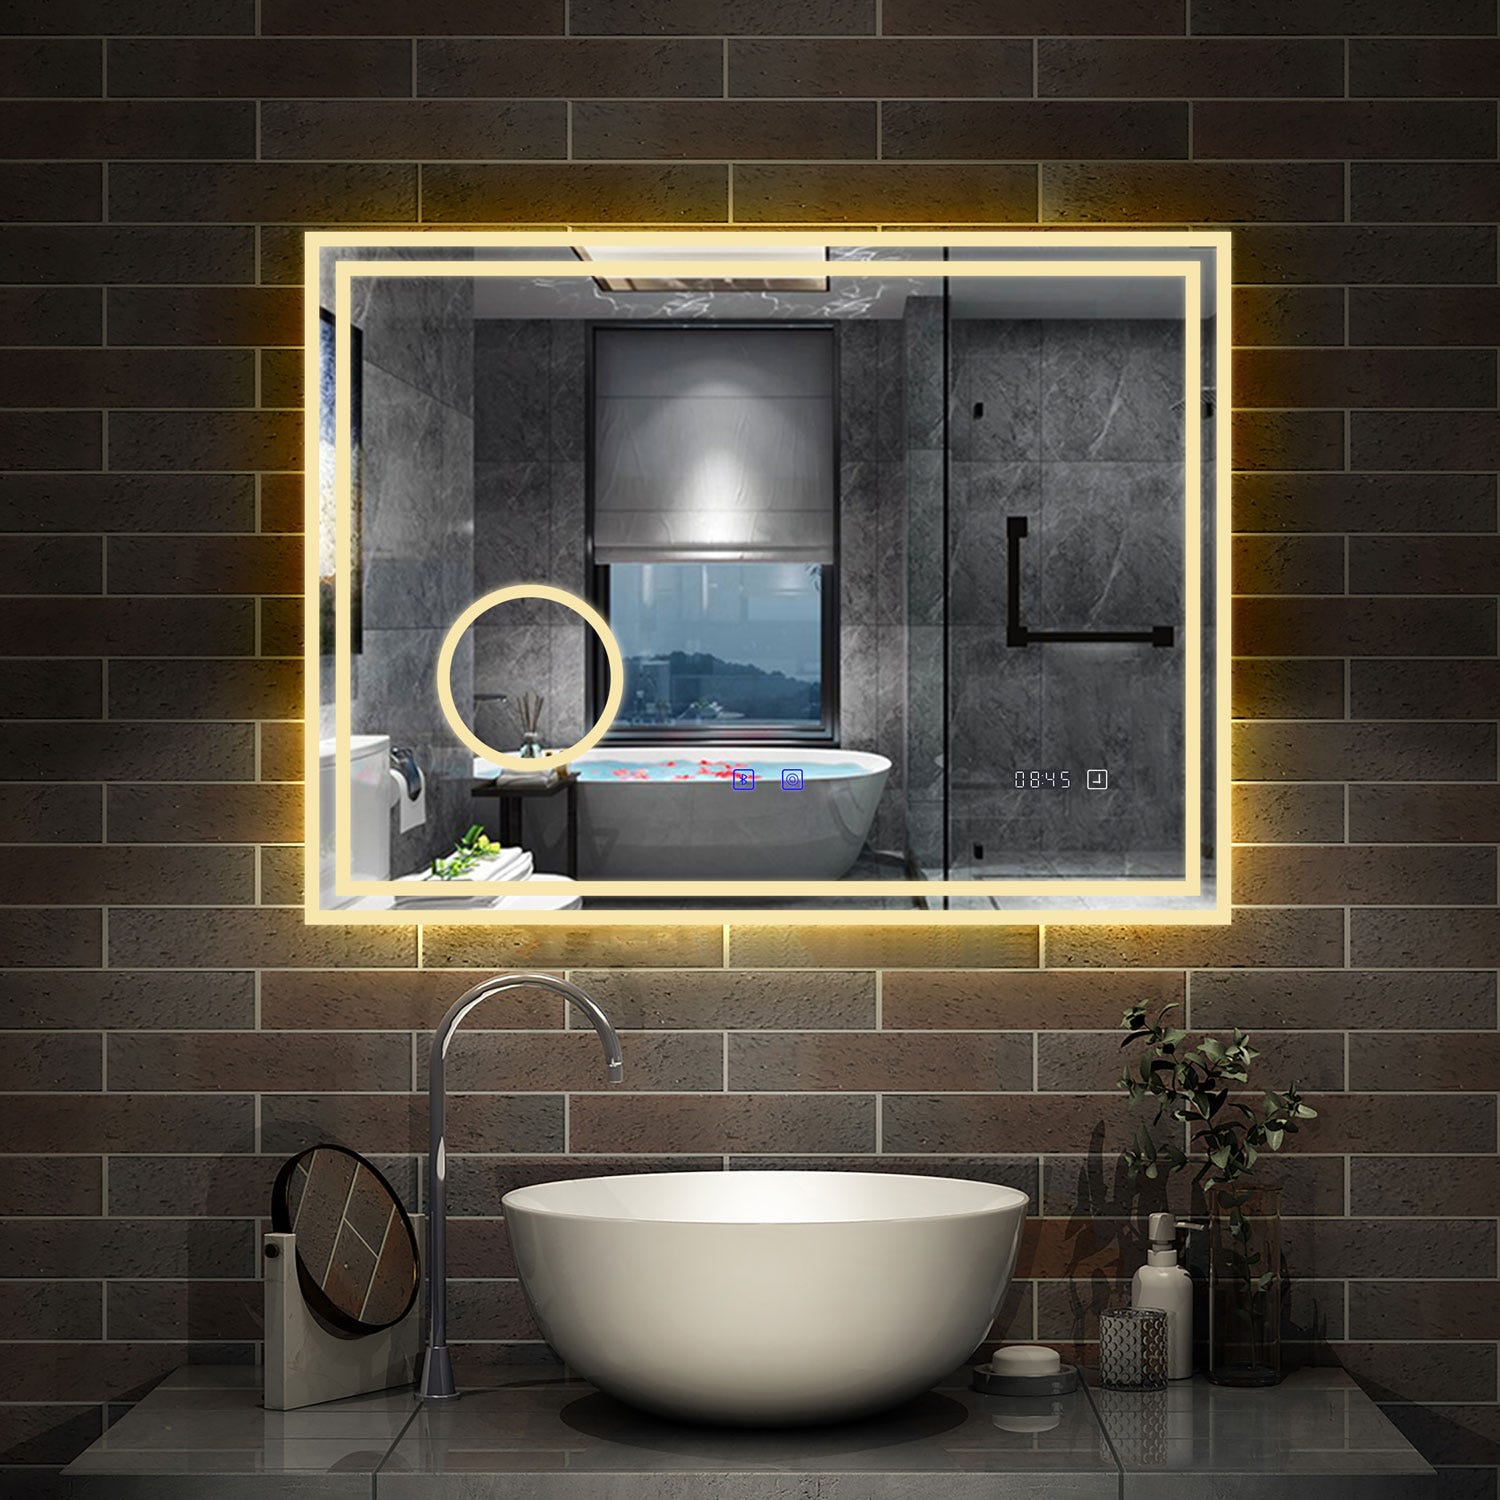 AICA LED miroir 140x80cm horloge + bluetooth + miroir grossissant + tricolore + tactile + anti-buée, suspendu horizontalement ,miroir salle de bain 4